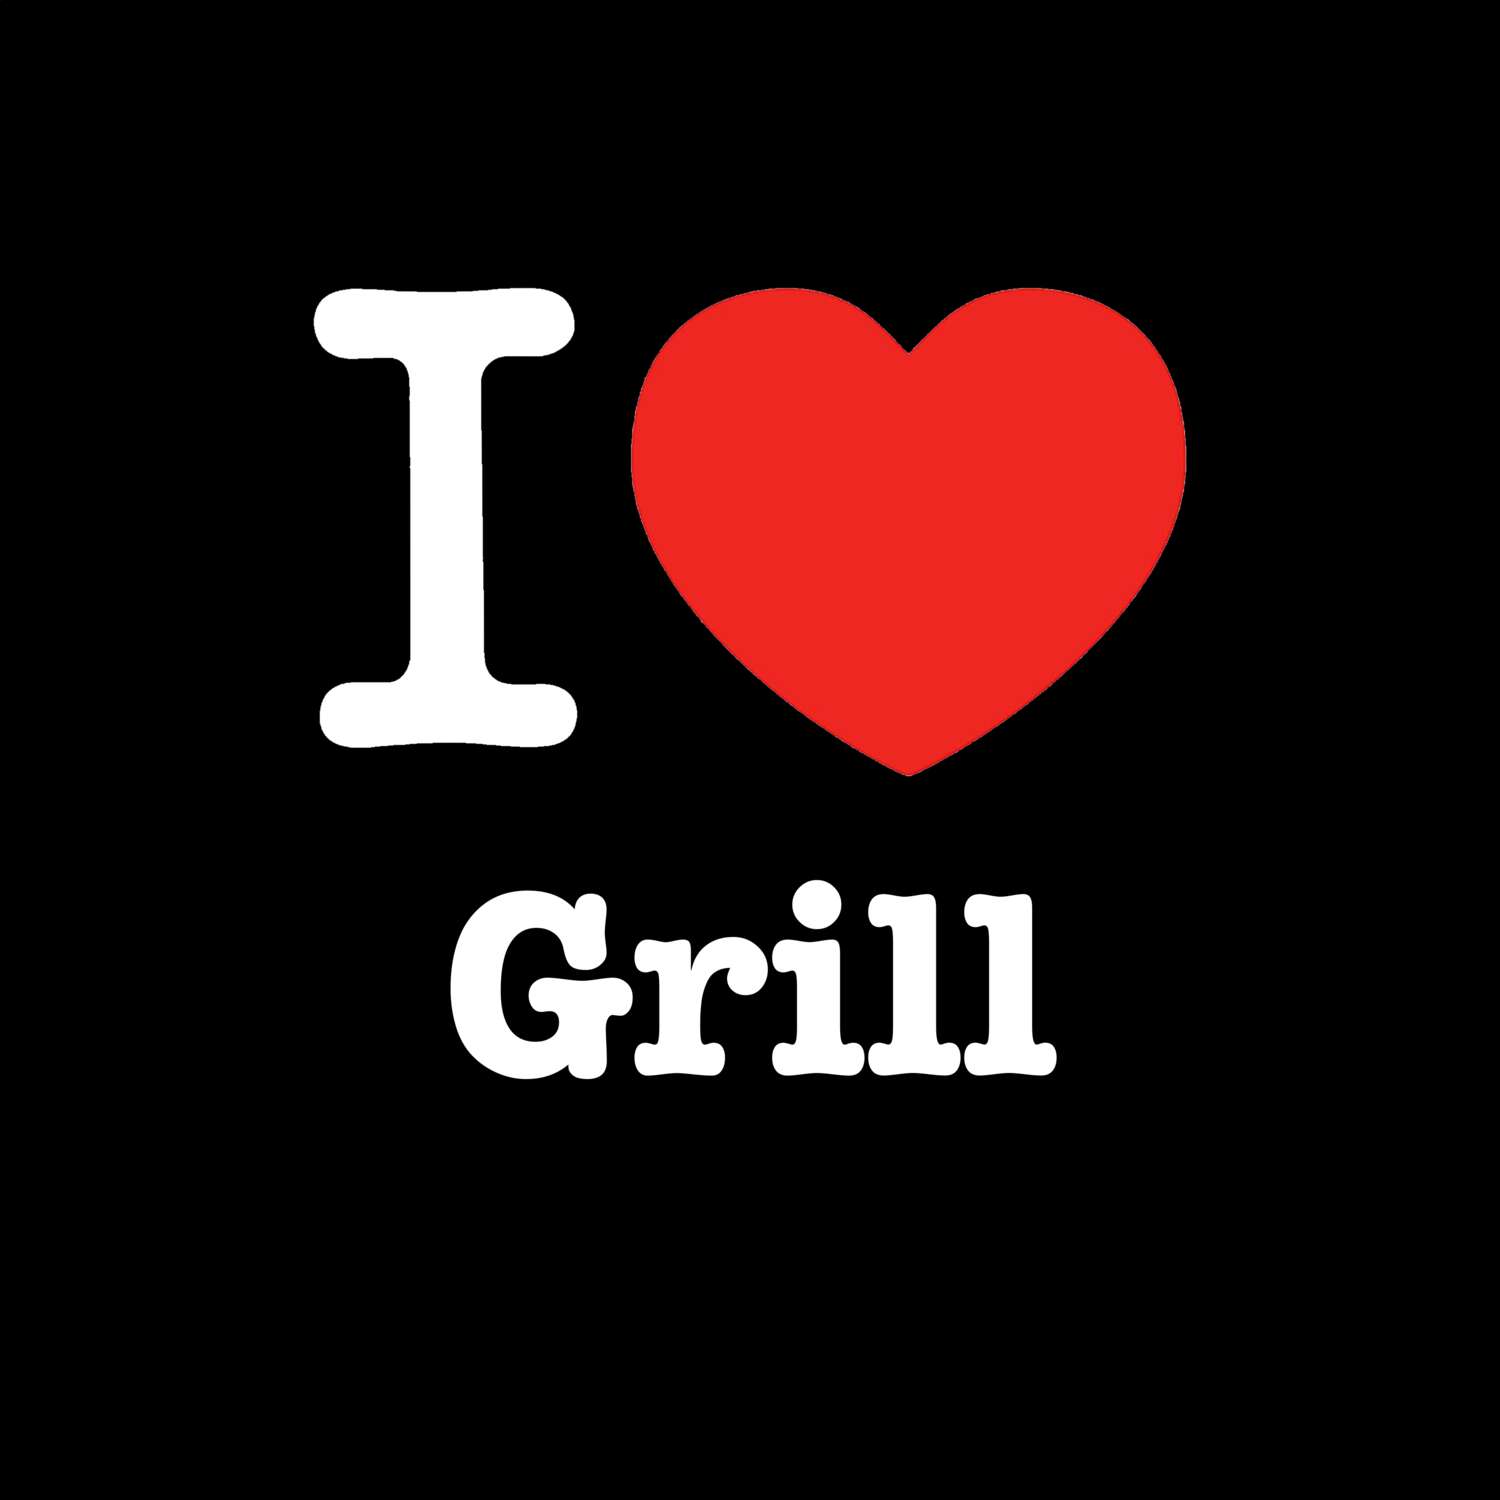 Grill T-Shirt »I love«